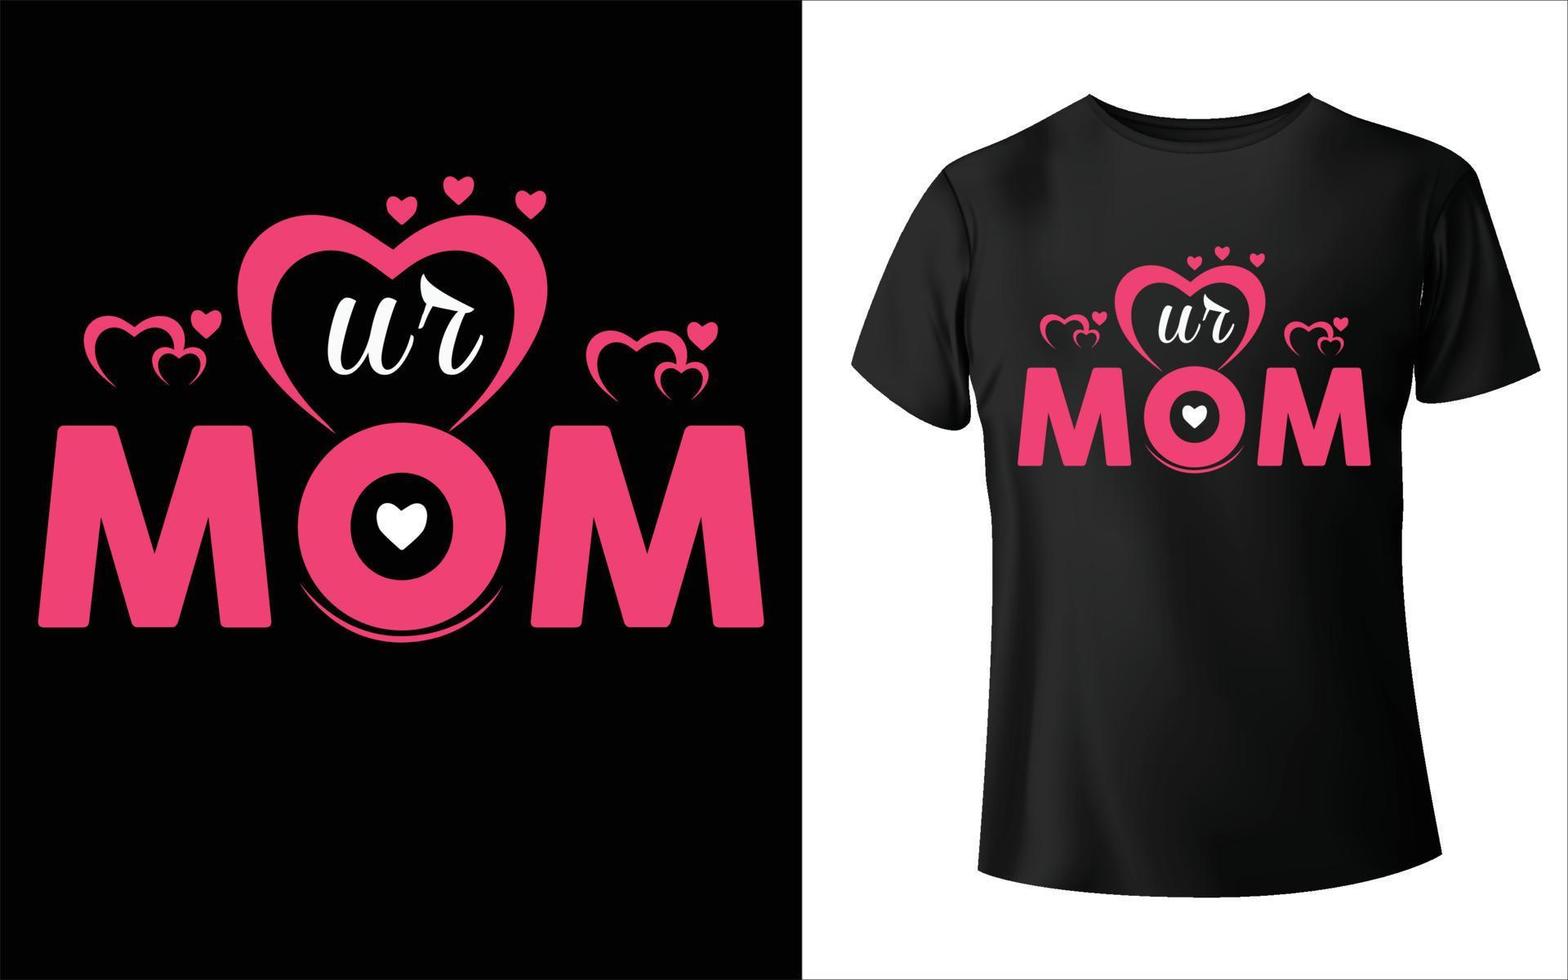 diseño de camisetas del día de la madre feliz, vector de mamá, diseño de camisetas del día de la madre, vector de mamá,